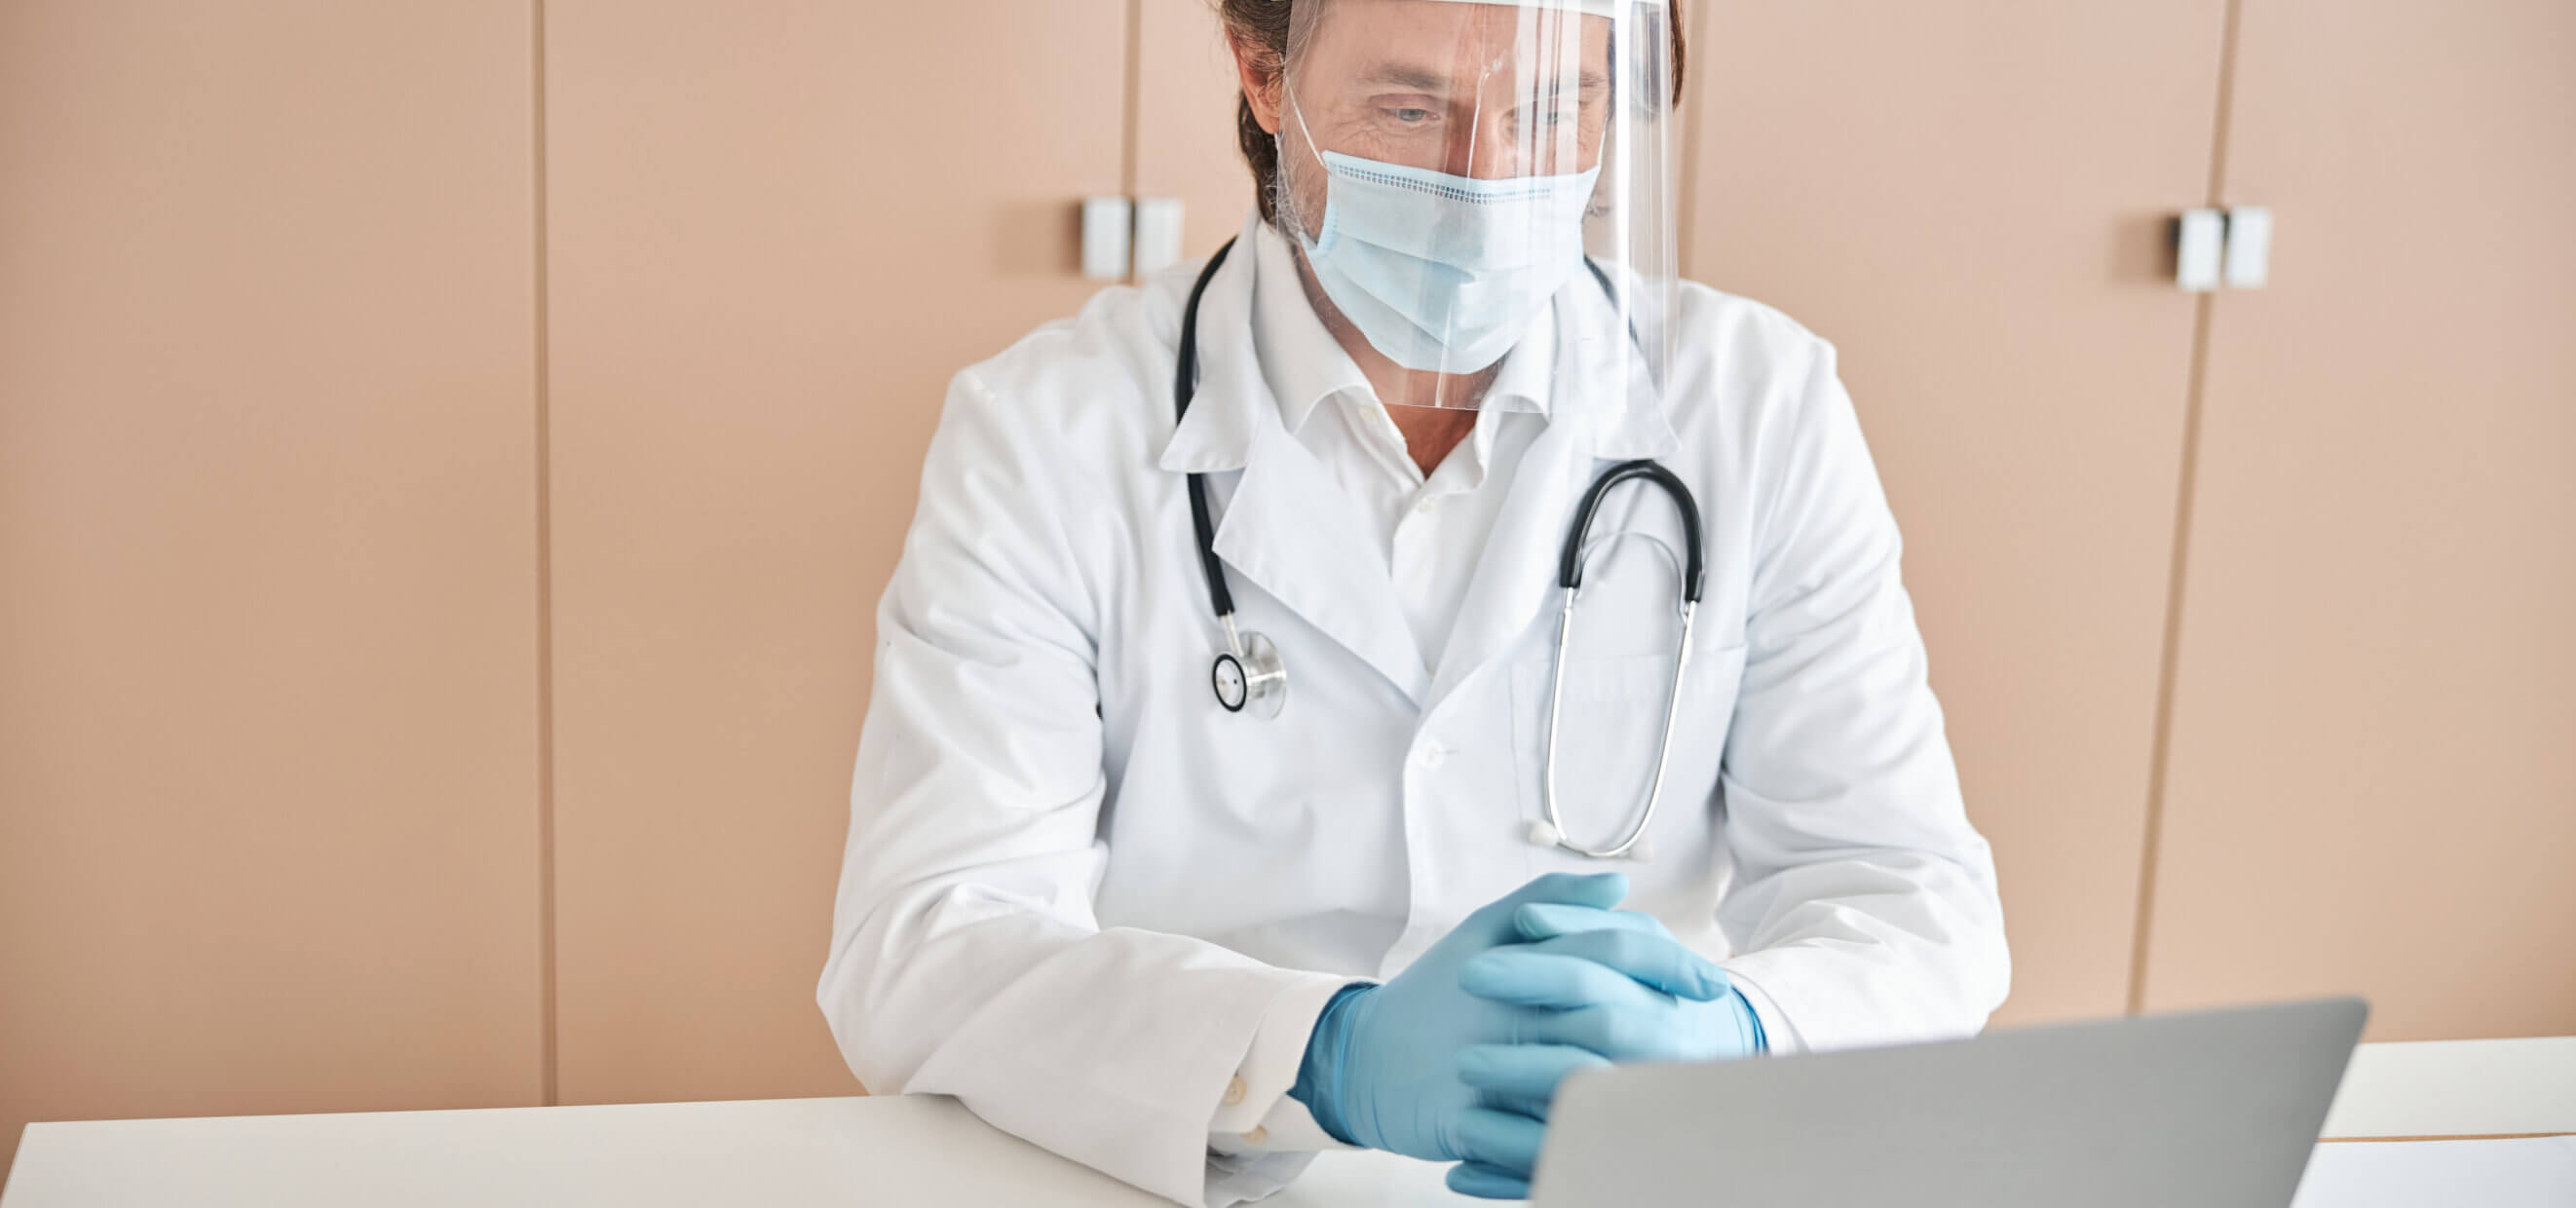 Certyfikaty P1 - powiadomienia e-mail - lekarz pracujący na laptopie w gabinecie